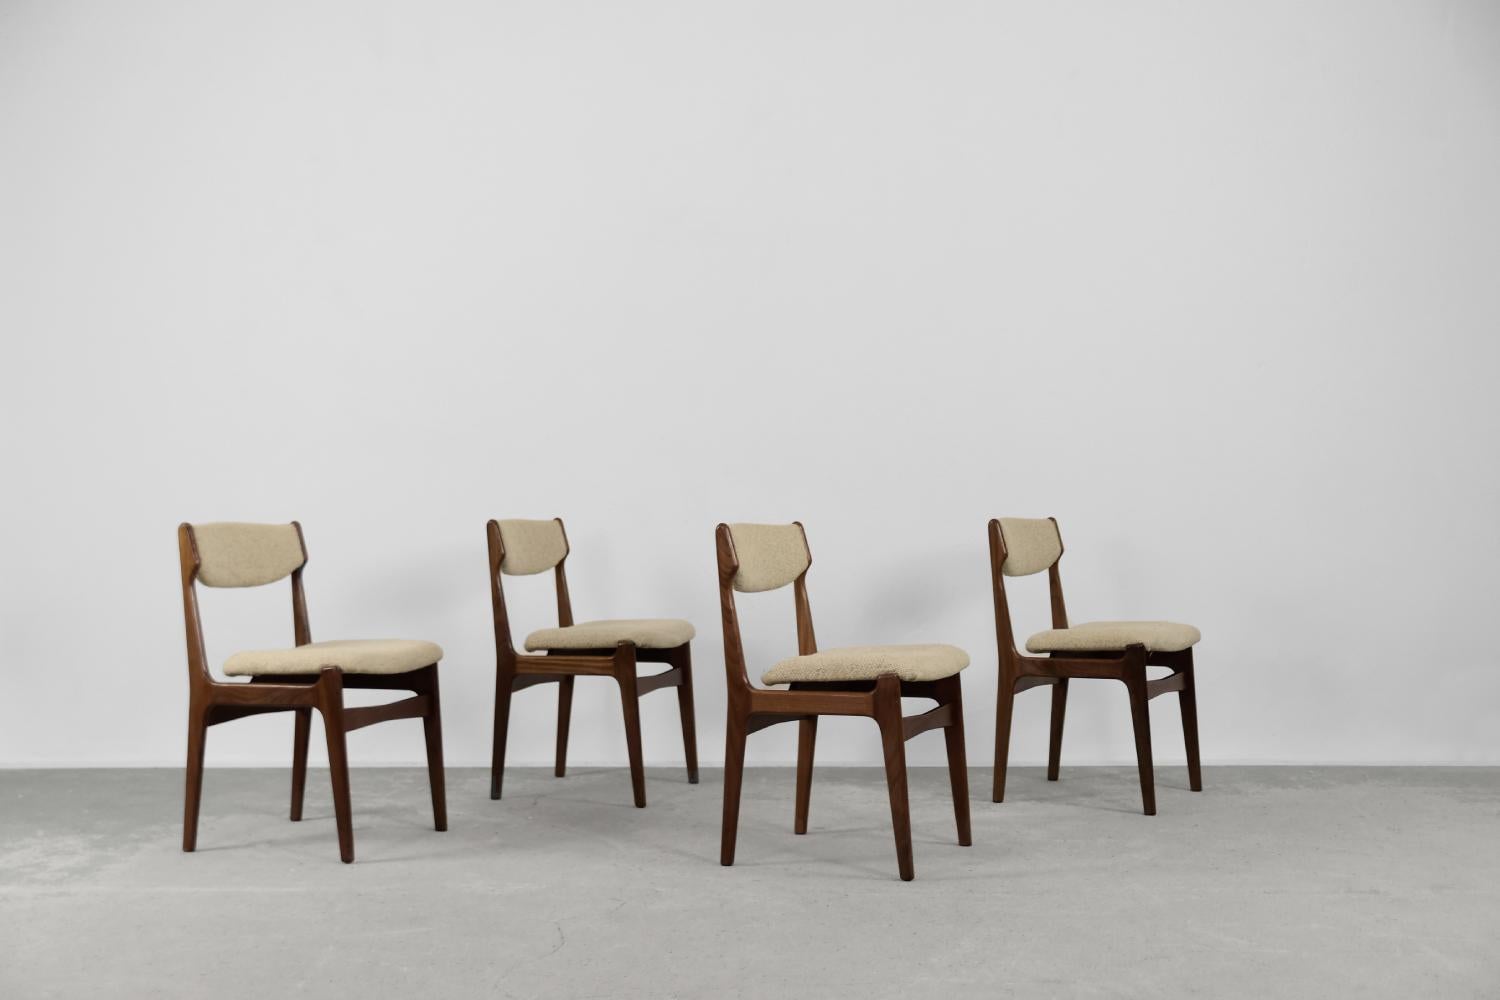 Cet ensemble de quatre chaises élégantes a été produit au Danemark dans les années 1960. Ils sont fabriqués en bois de teck massif dans une nuance de brun foncé. L'assise et le dossier sont garnis d'un tissu épais en laine beige de haute qualité.